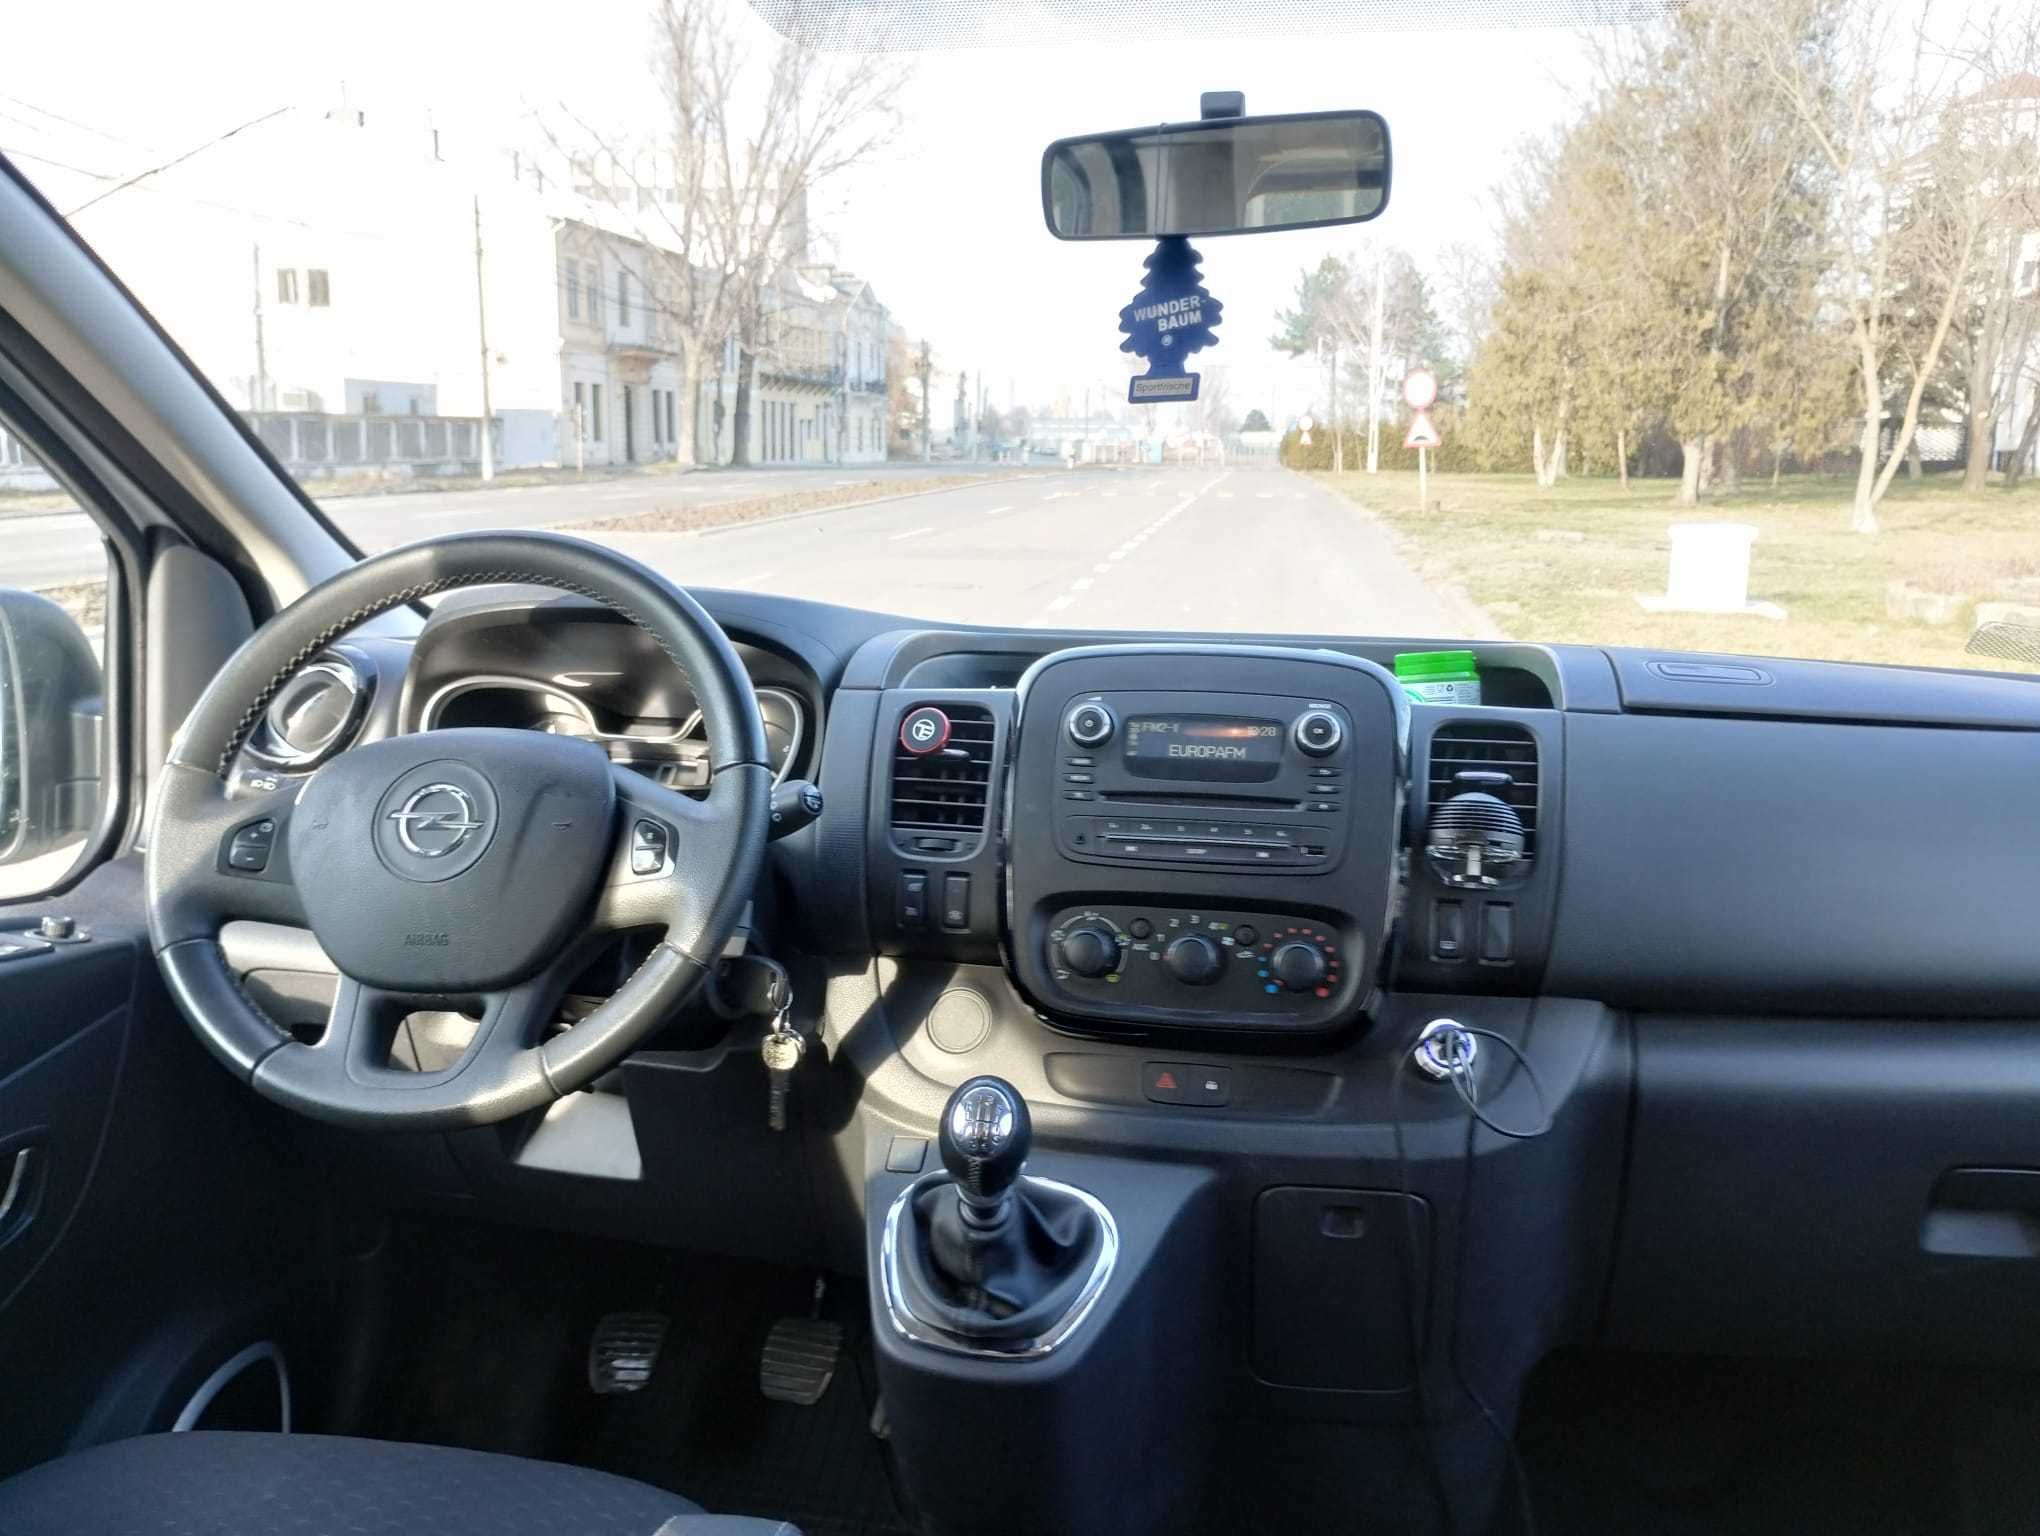 Opel vivaro 7+1 (renault trafic) 2019 1’6 diesel 120cp varianta lunga